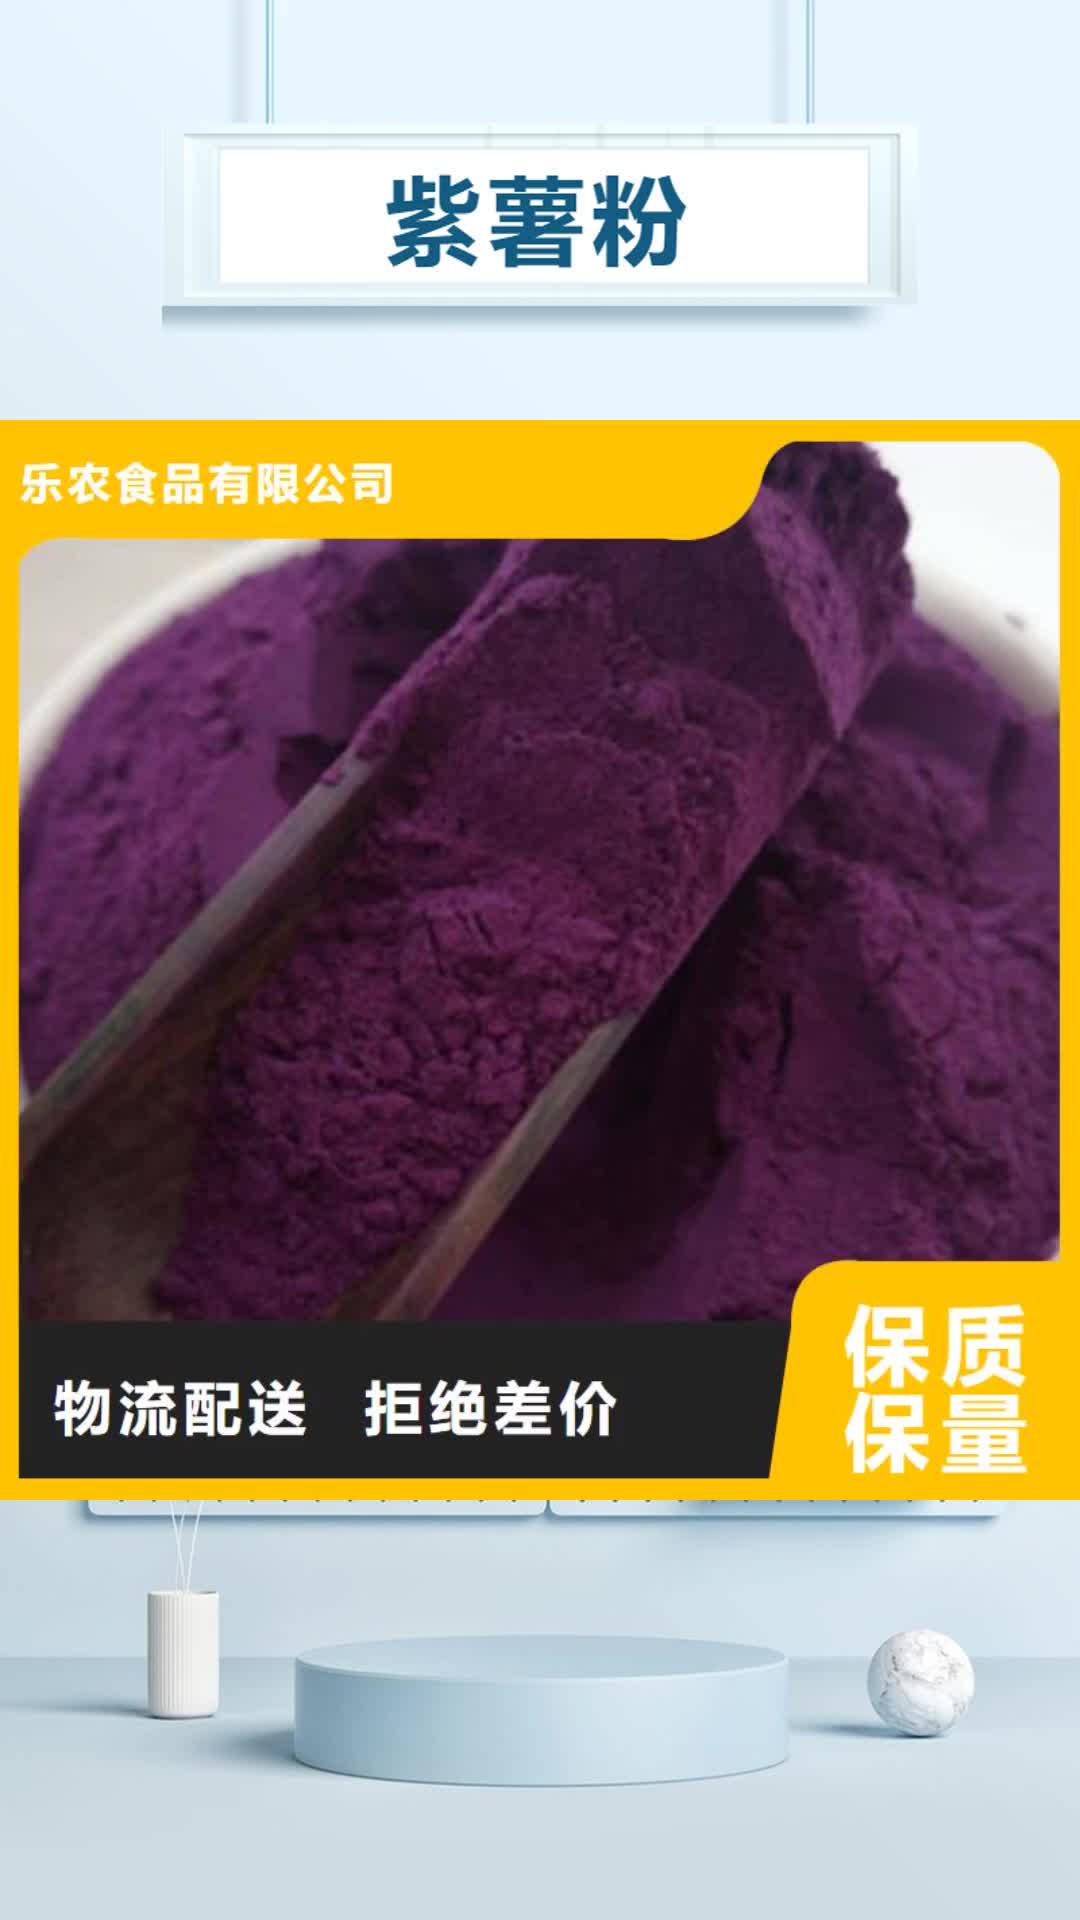 濮阳 紫薯粉,【紫薯雪花片】用心做好每一件产品